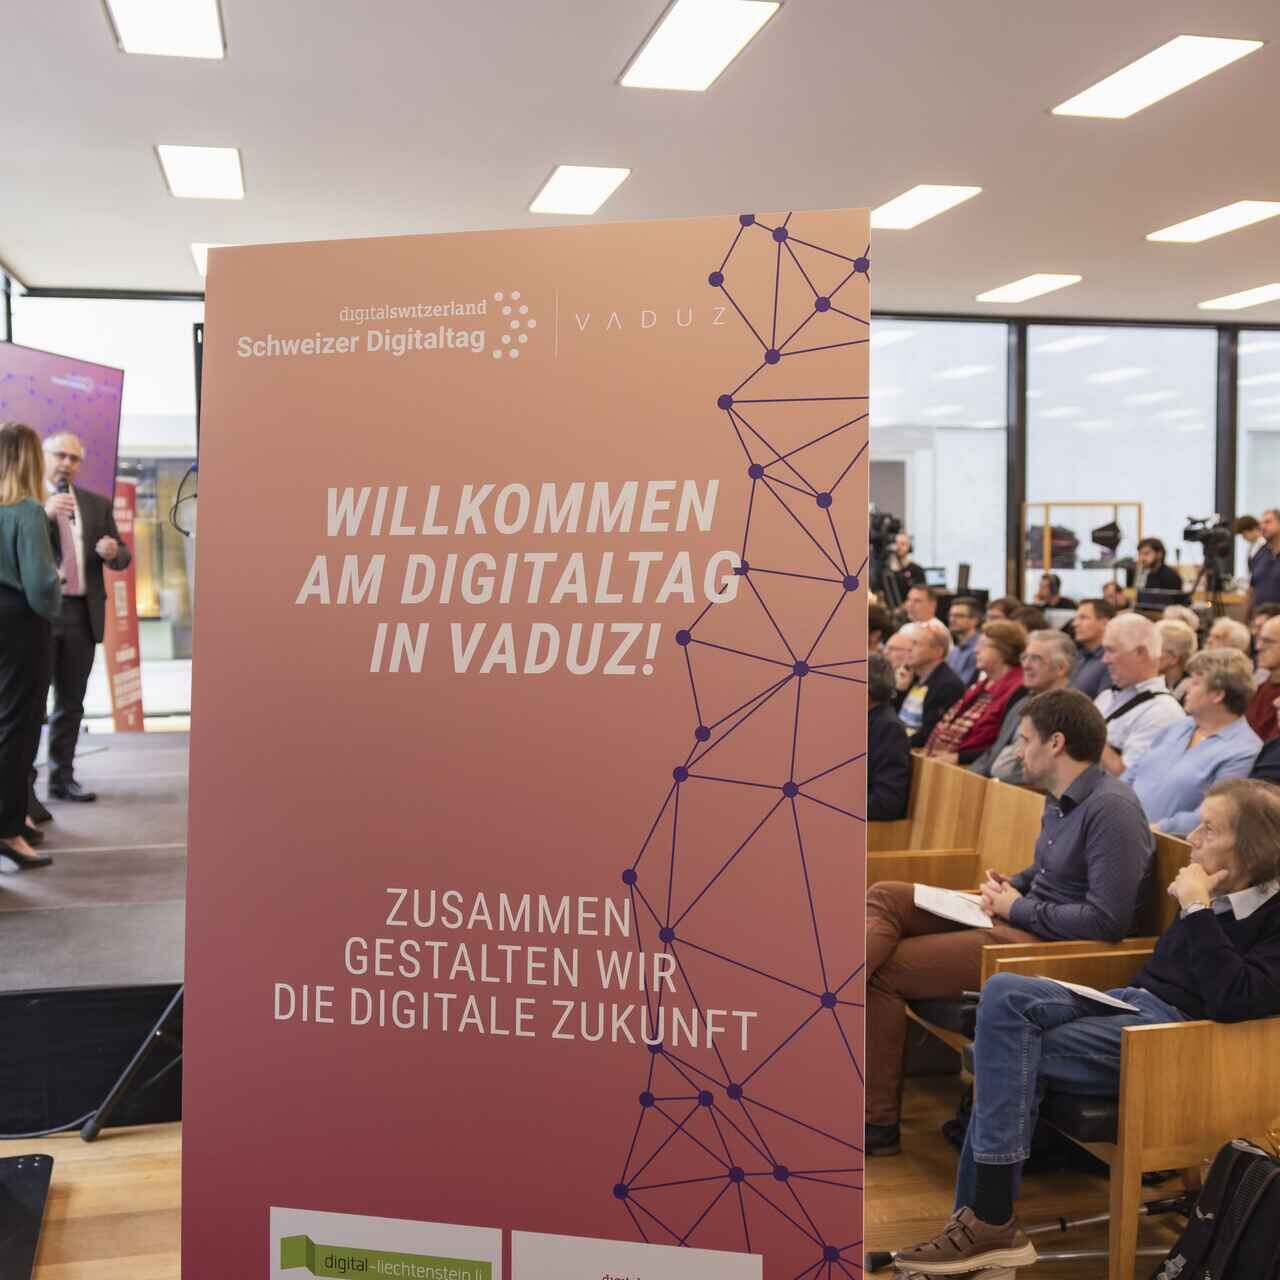 "Digitaltag Vaduz" välkomnades av Konstmuseum i huvudstaden i Furstendömet Liechtenstein lördagen den 15 oktober 2022